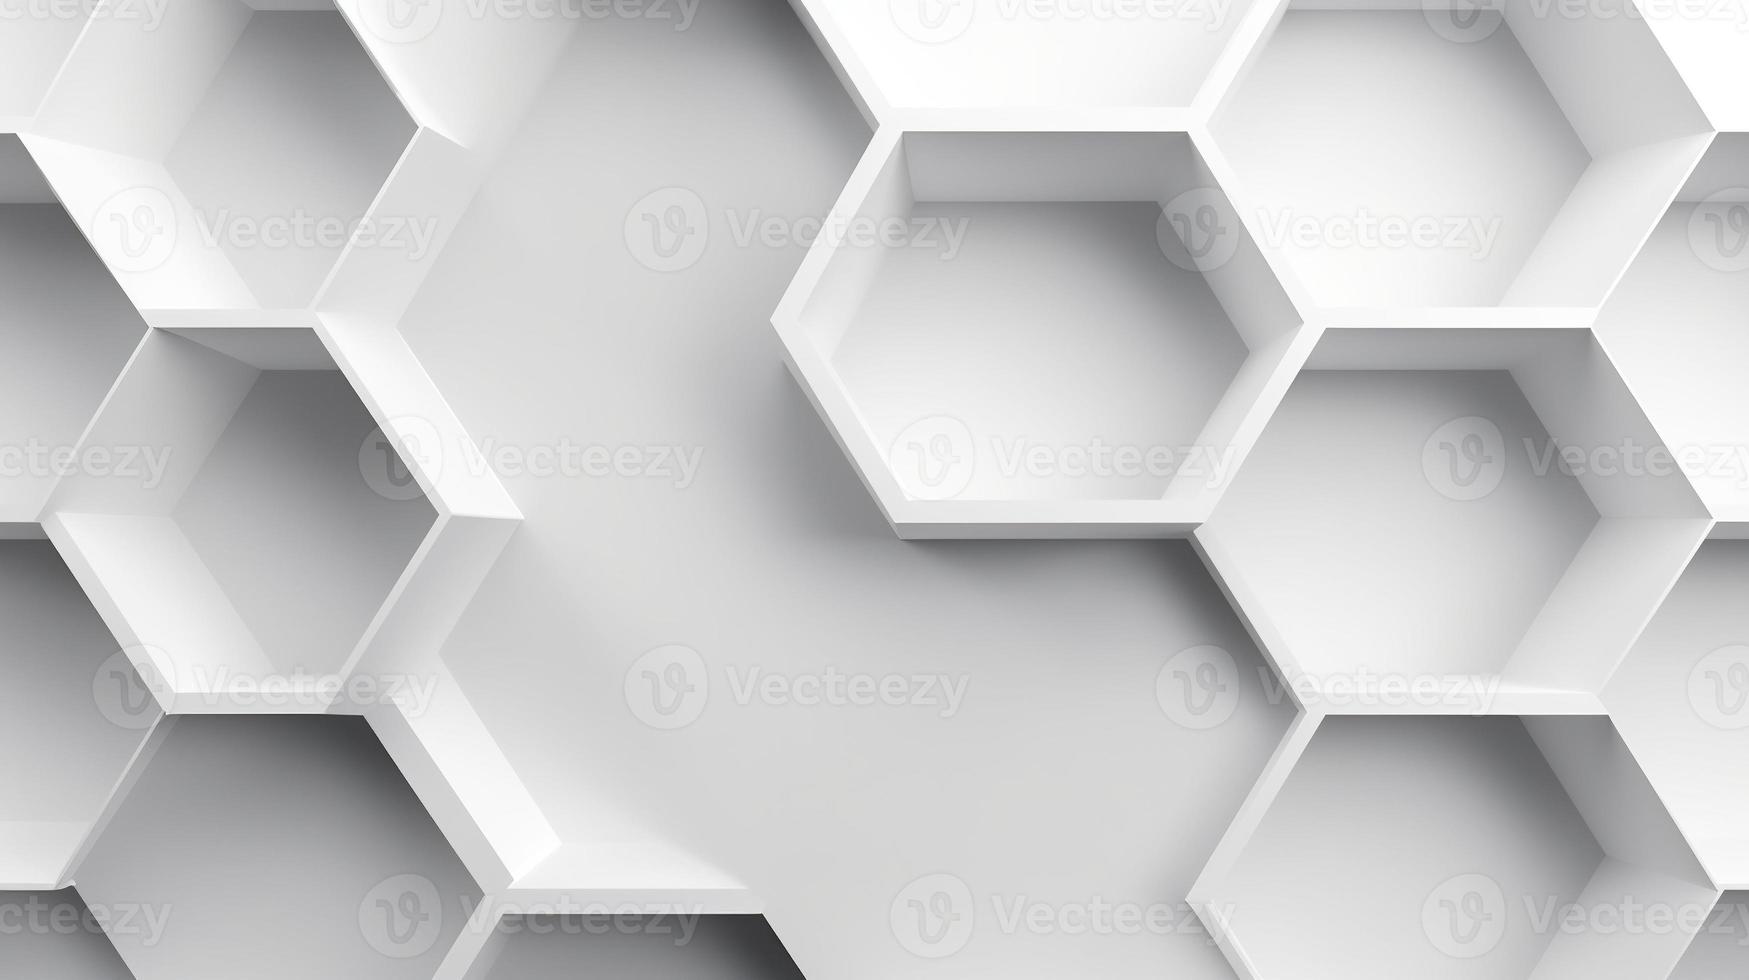 abstrakt 3d tolkning av vit hexagoner. trogen bakgrund foto